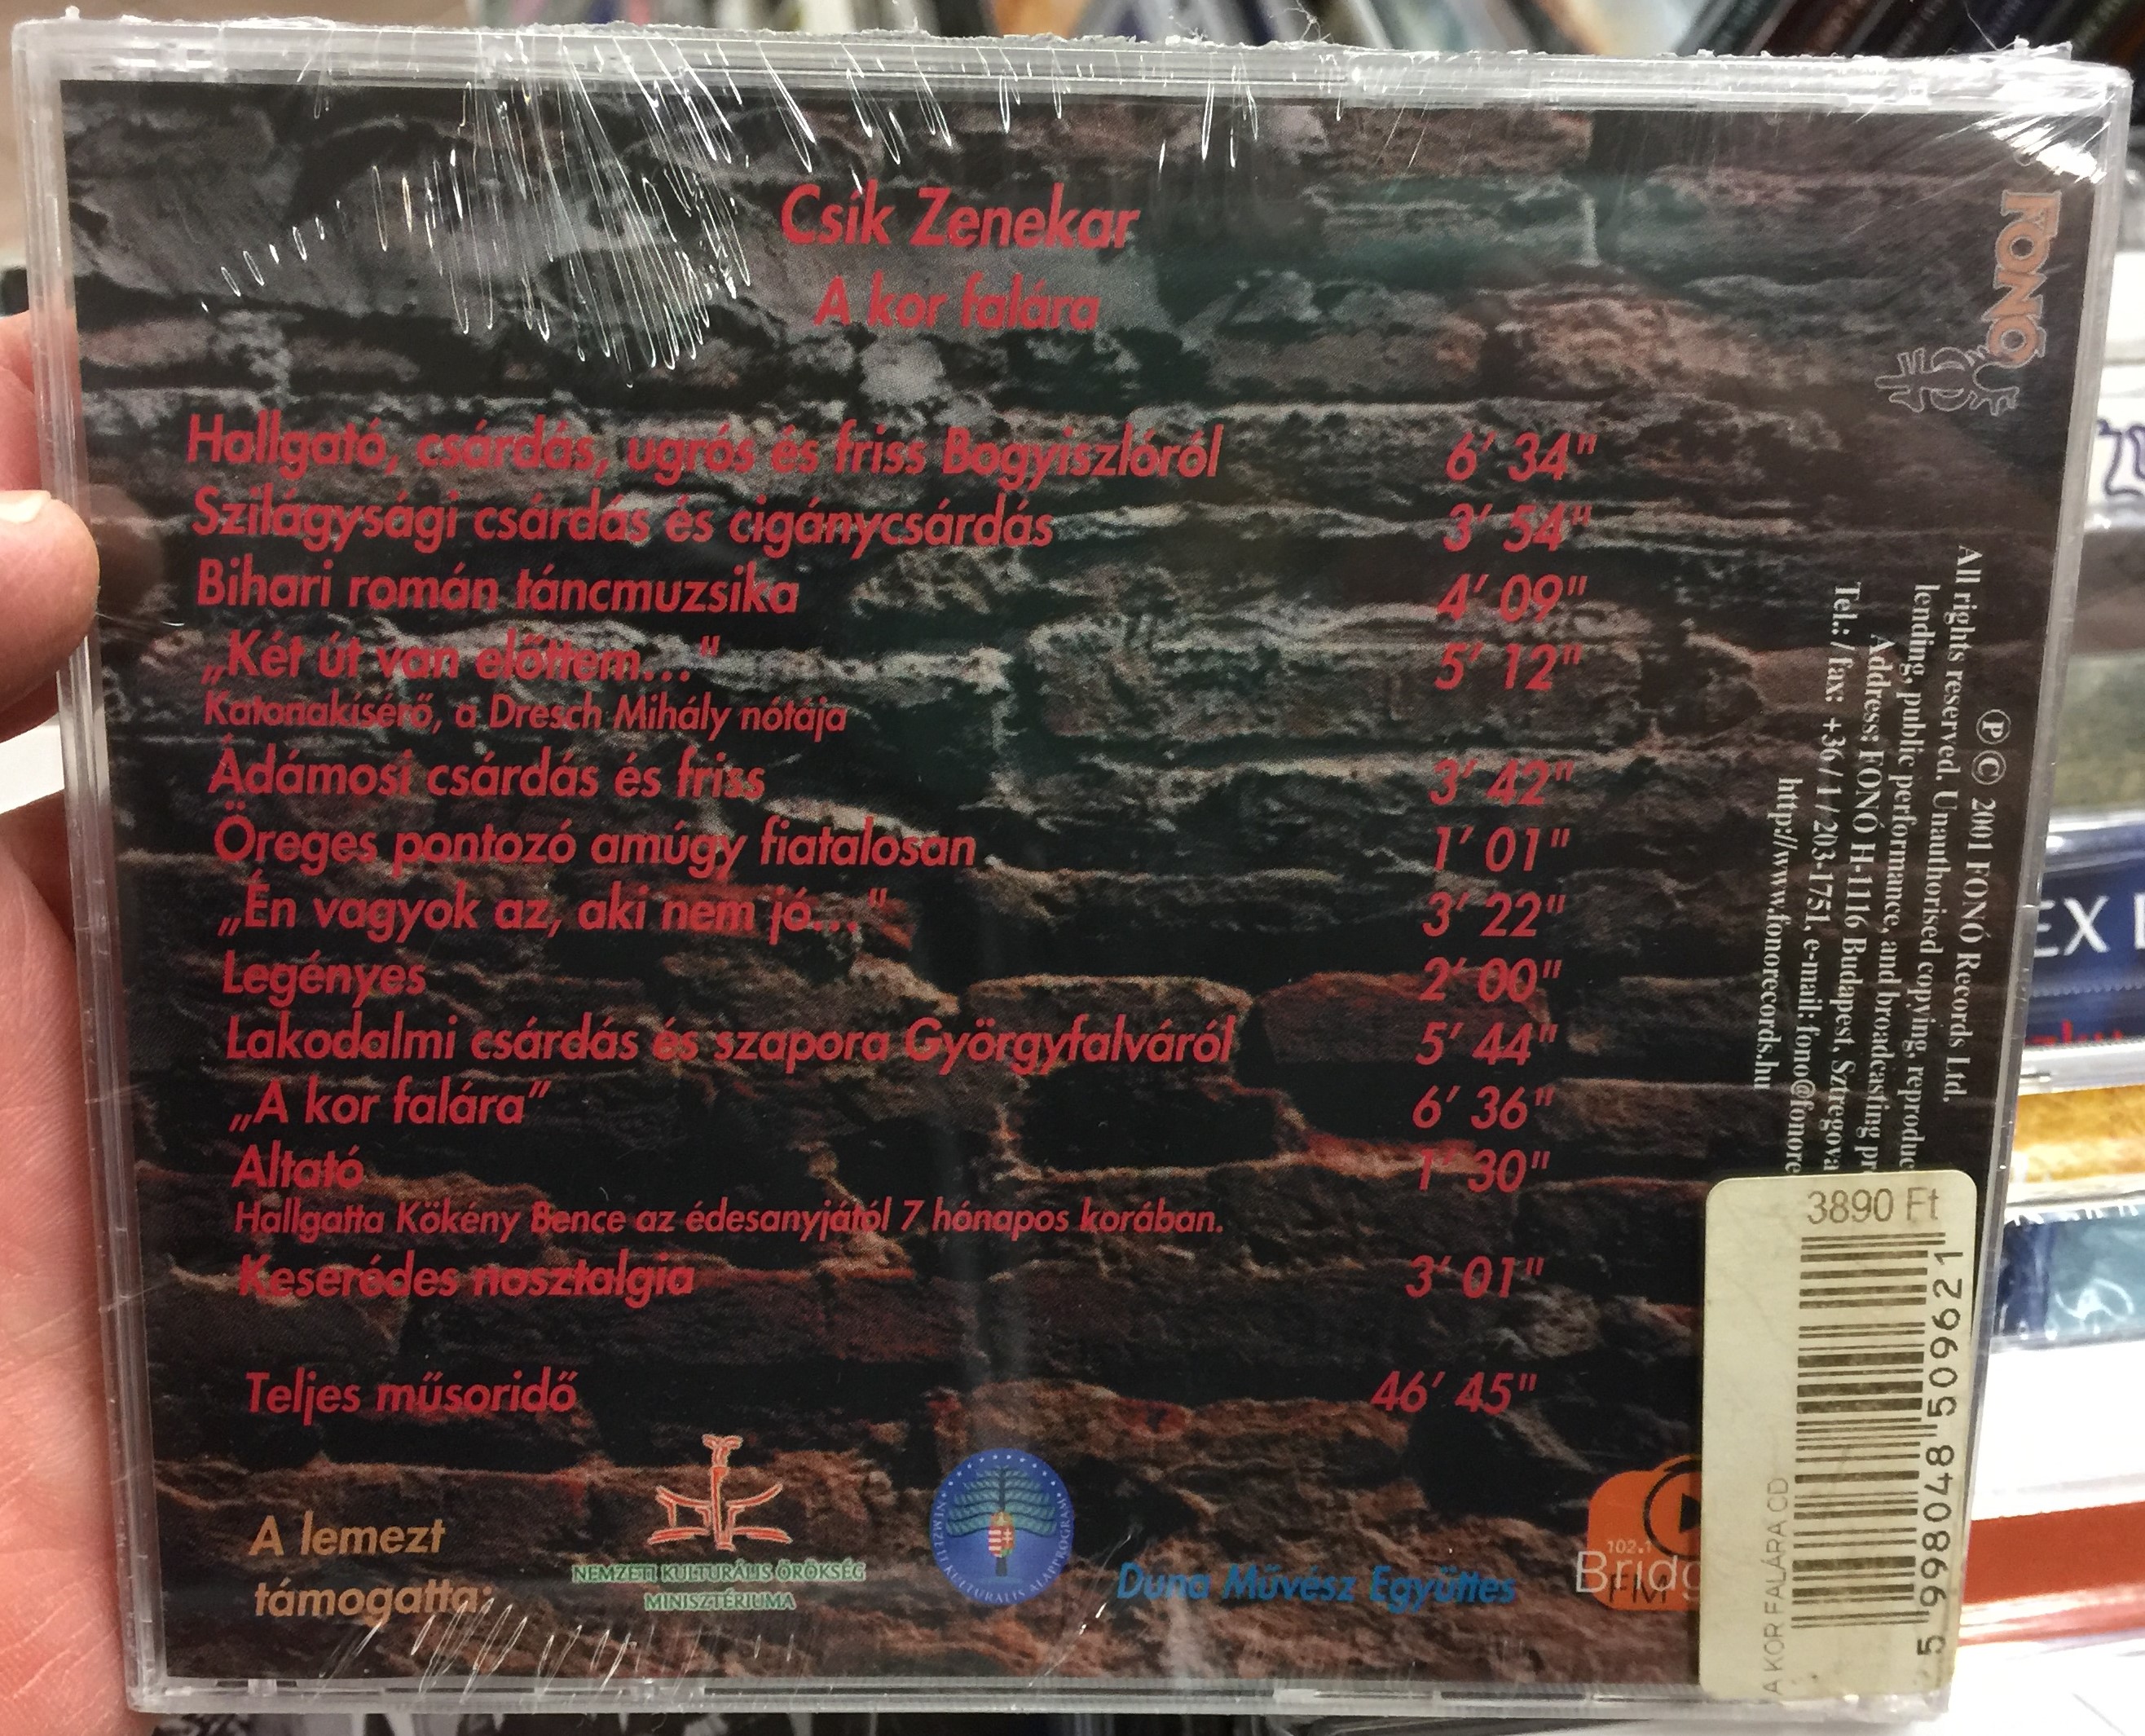 cs-k-zenekar-a-kor-fal-ra-hungarian-folk-music-fon-records-audio-cd-2001-fa-096-2-2-.jpg